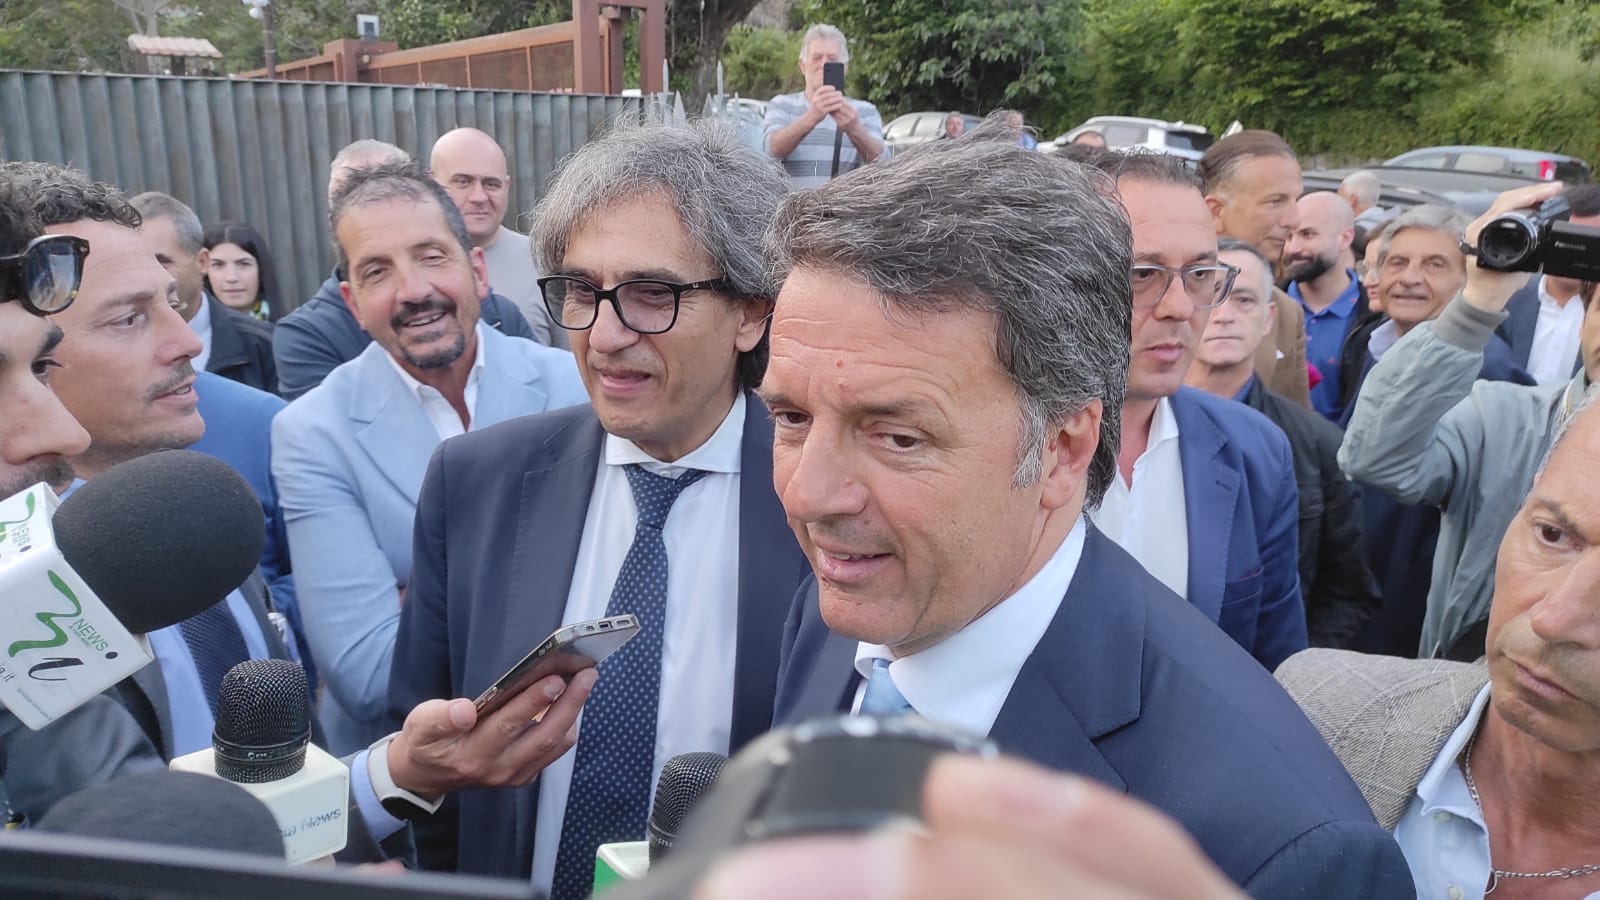 L’ex premier Renzi esalta la platea irpina e Mastella: meglio del M5S